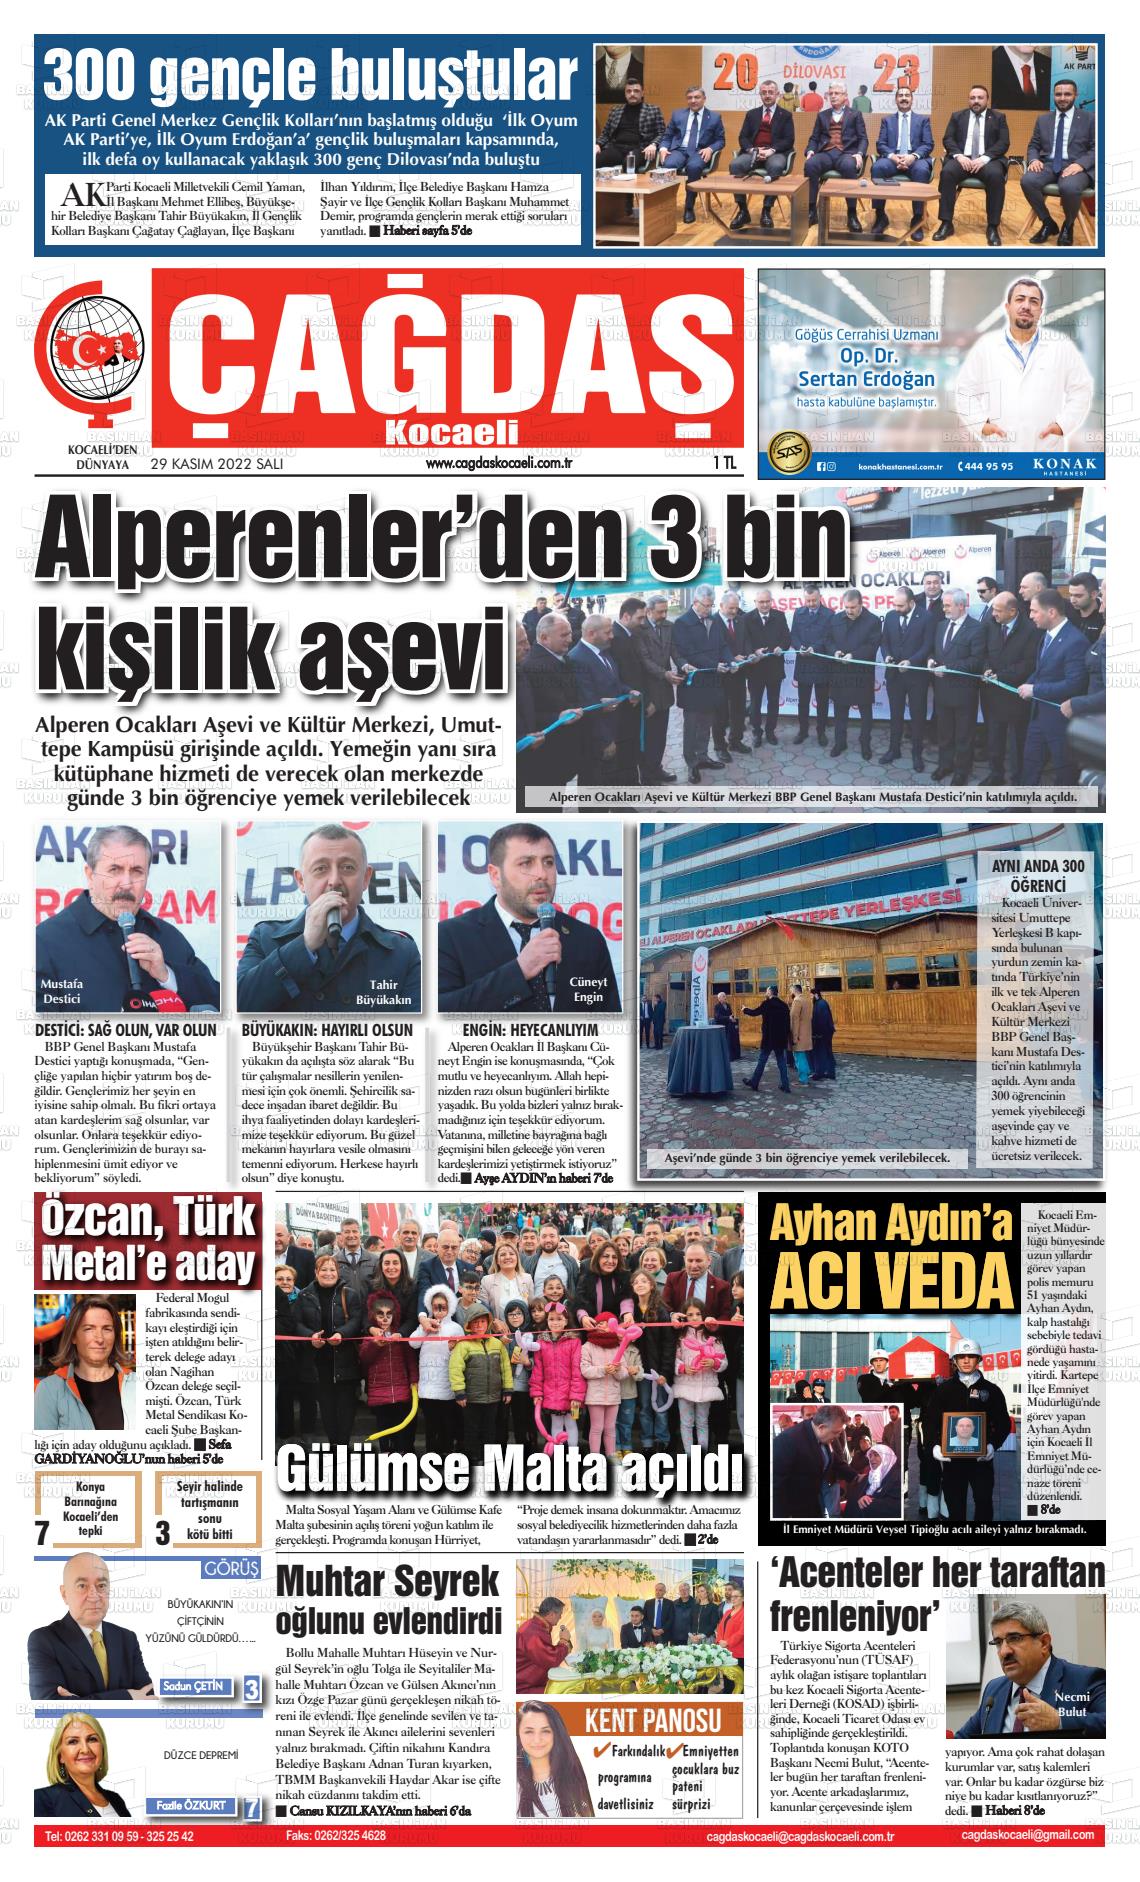 29 Kasım 2022 Çağdaş Kocaeli Gazete Manşeti